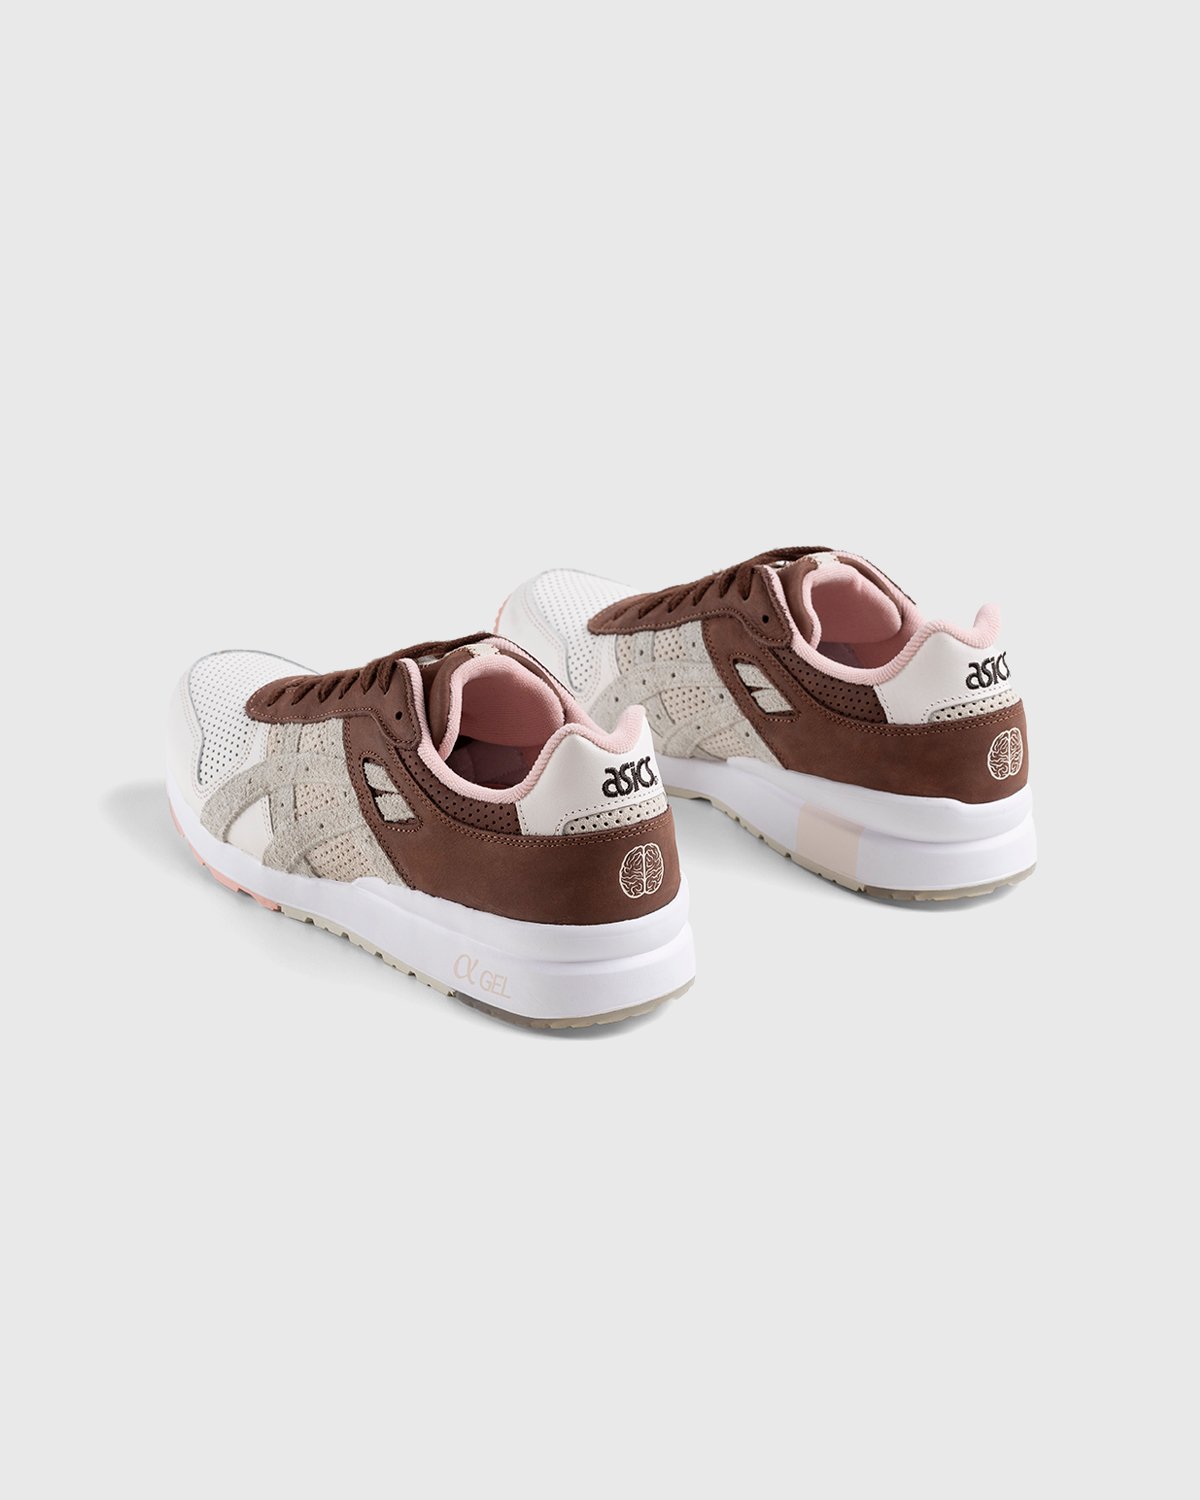 asics x Afew - GT-II Blush/Chocolate Brown - Footwear - Pink - Image 4